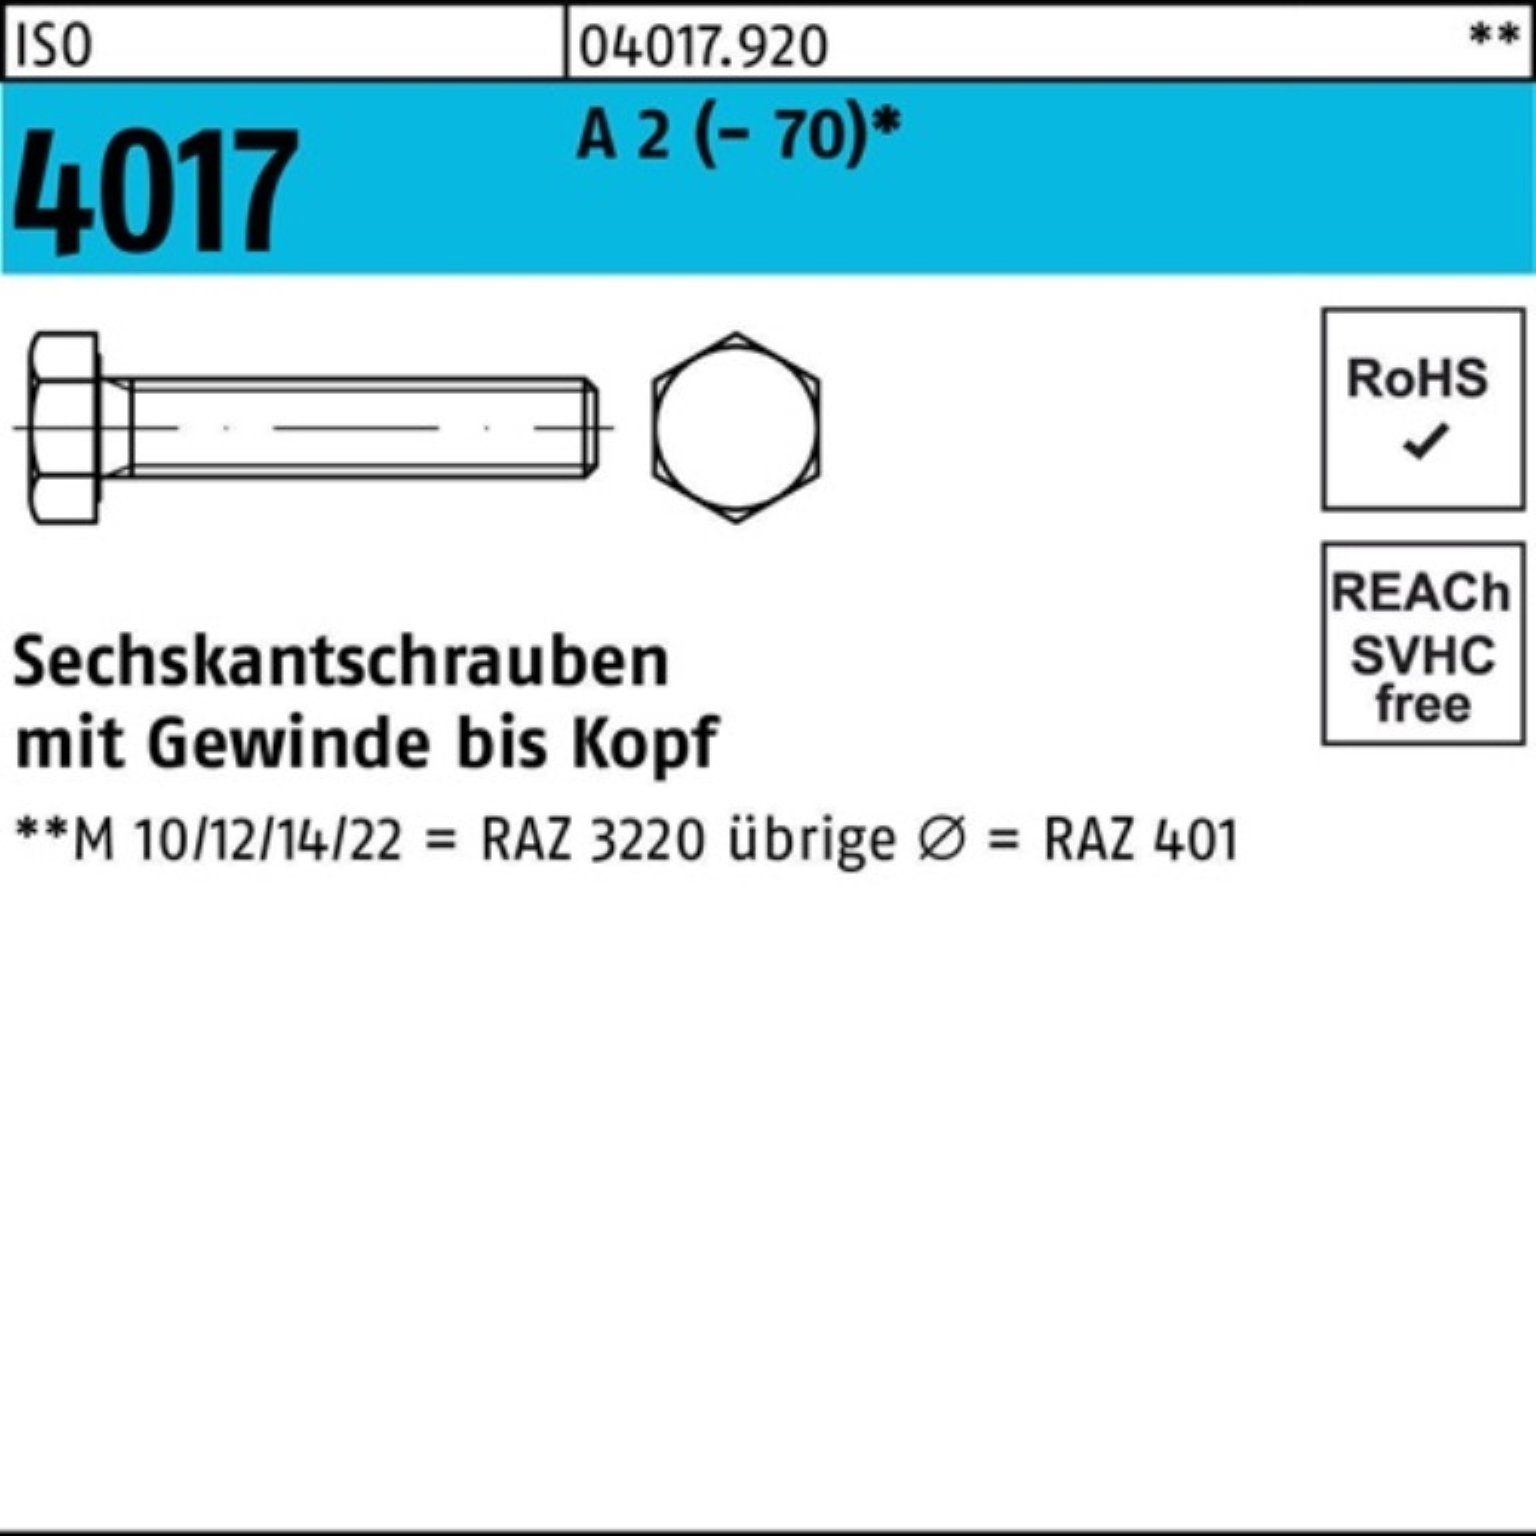 Bufab Sechskantschraube 100er Pack Sechskantschraube ISO 4017 VG M12x 40 A 2 (70) 100 Stück